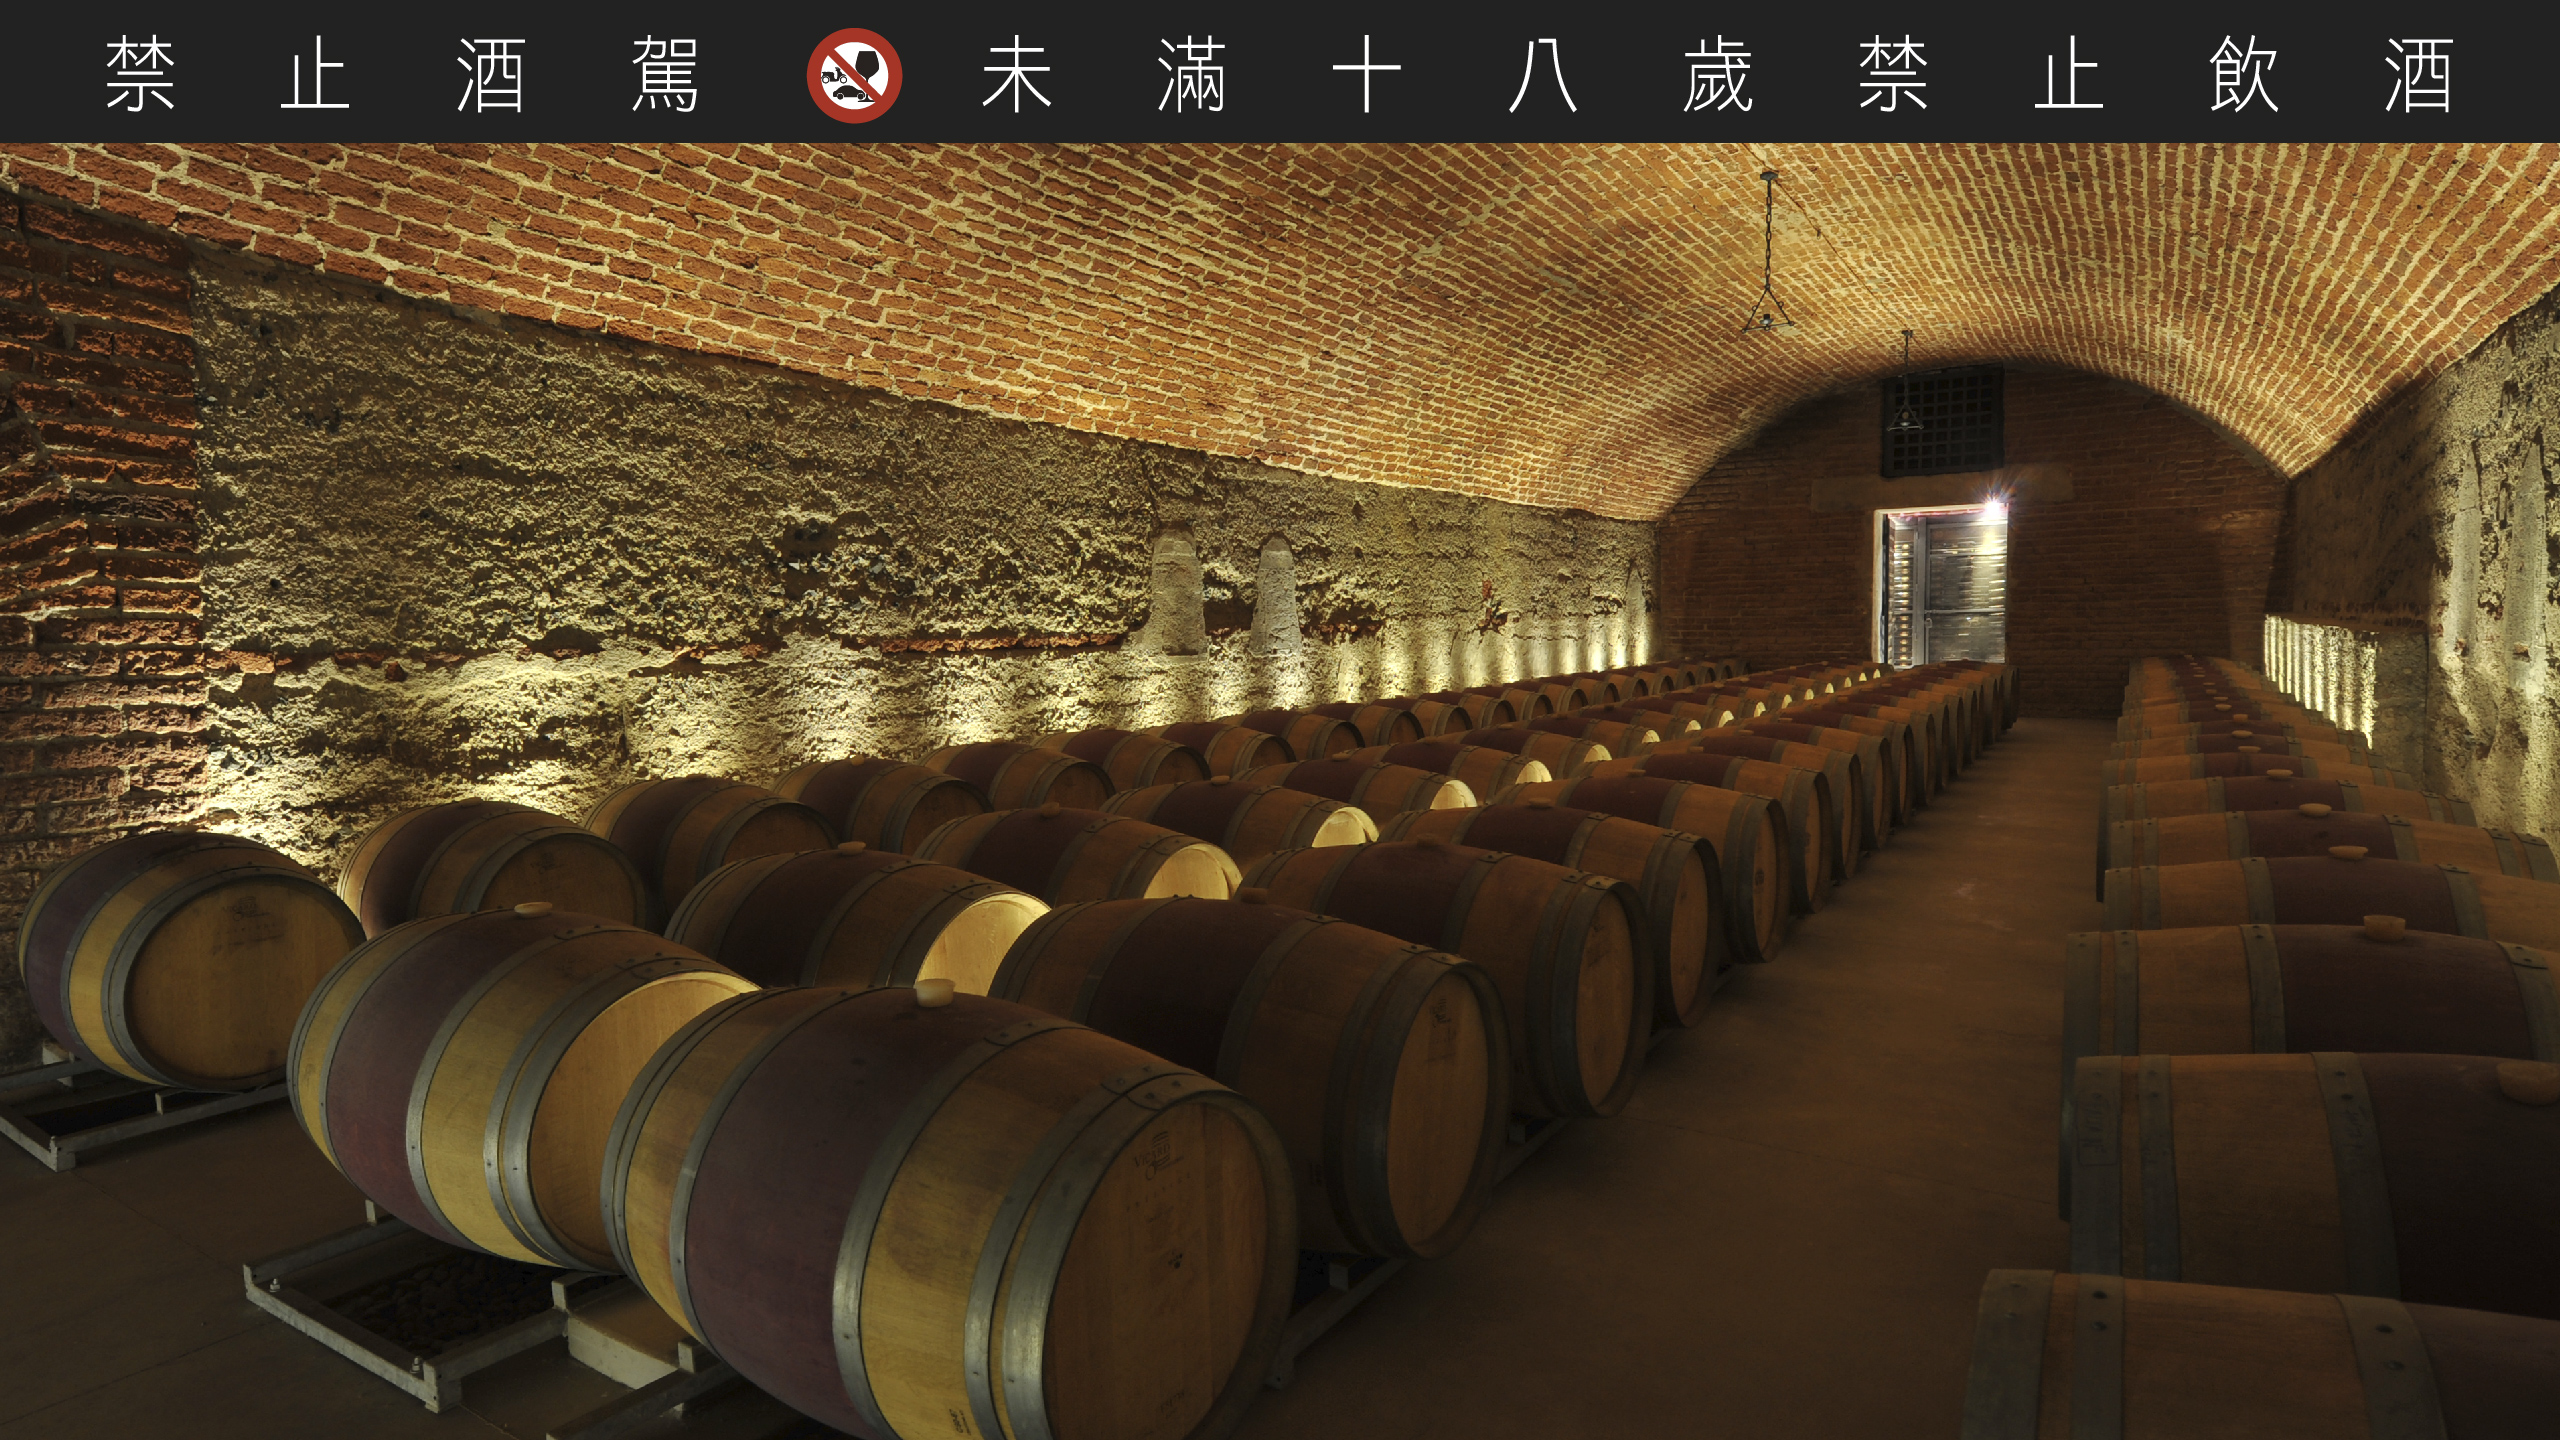 在深涼的百年酒窖中藏有可媲美法國五大酒莊的精品美酒。